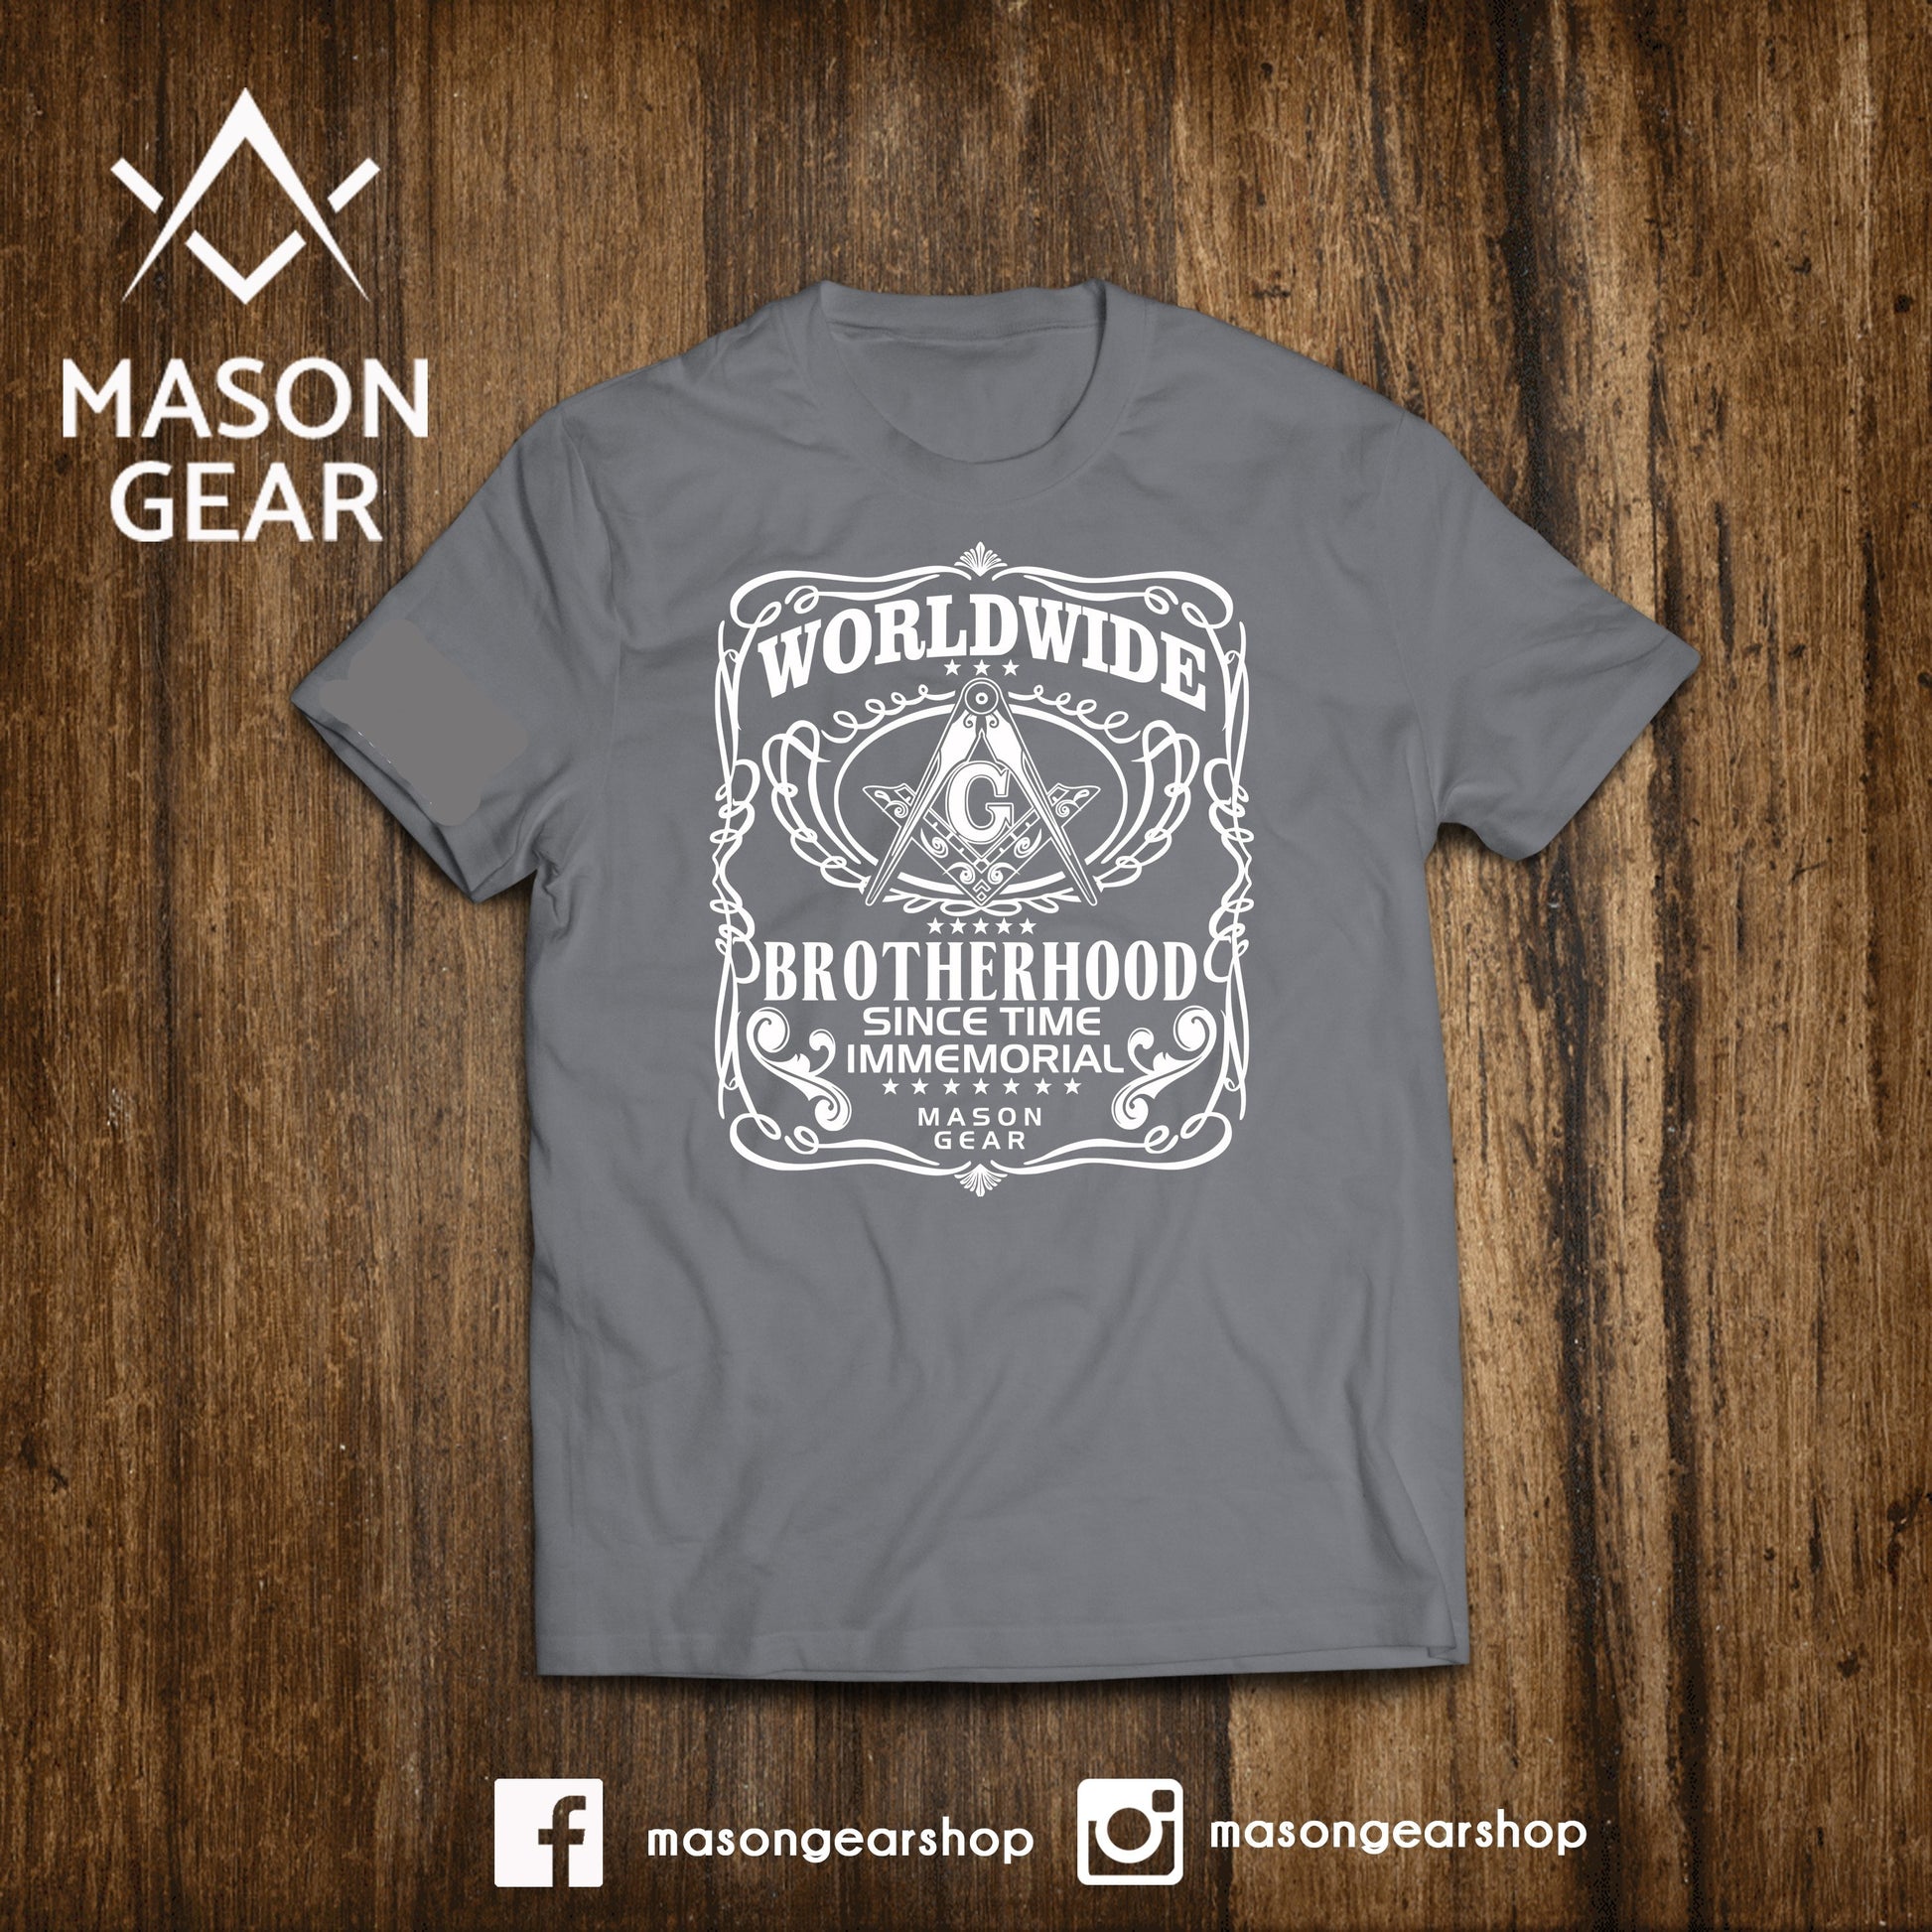 Worldwide Brotherhood  - tshirt - Mason Gear Shop